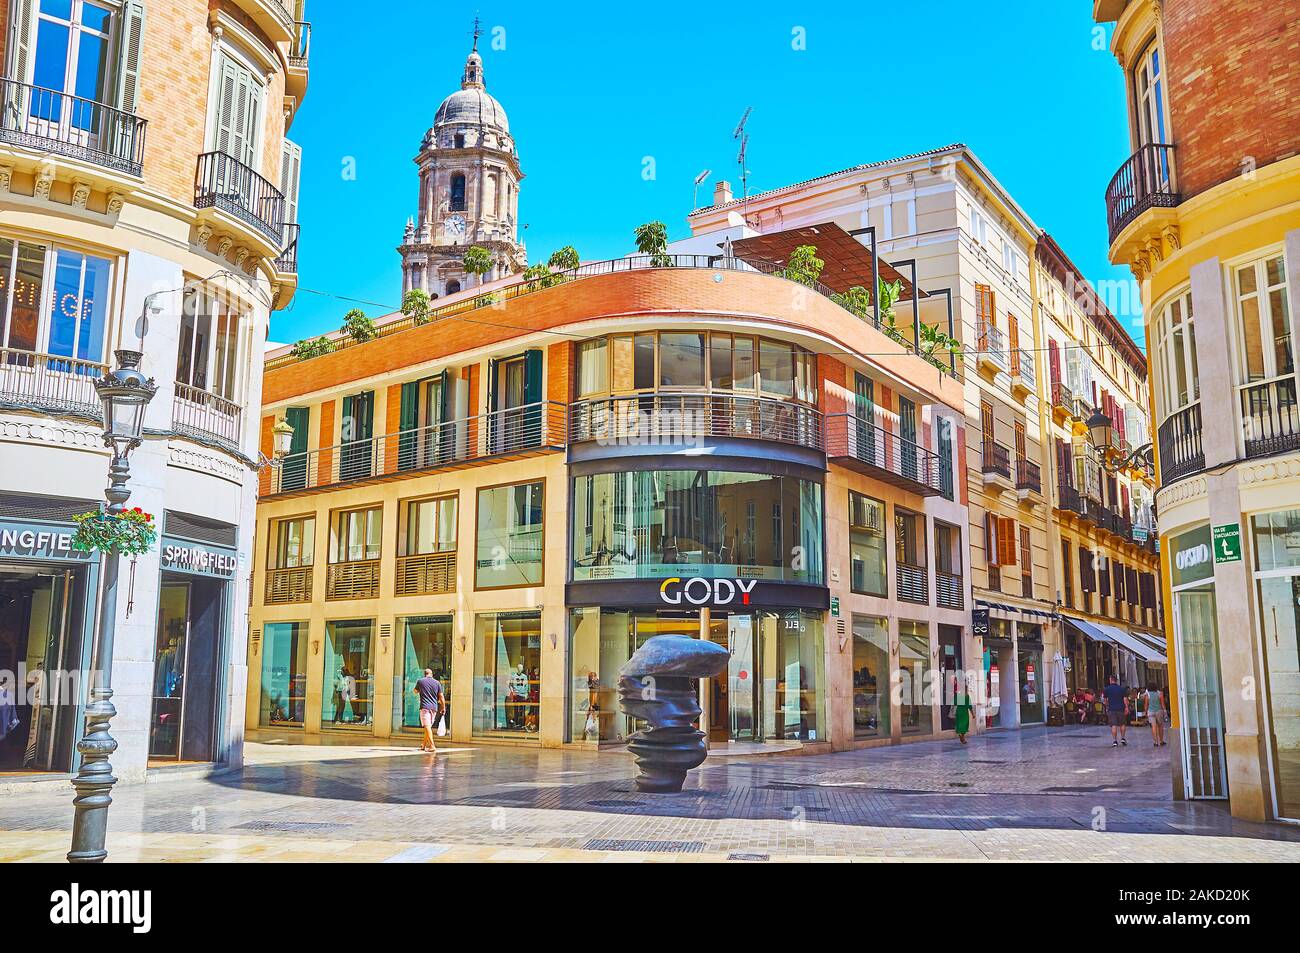 MALAGA, Spagna - 26 settembre 2019: la scultura moderna punti di vista da Tony Cragg, situato in Calle Larios amid edifici classici e fashion st Foto Stock